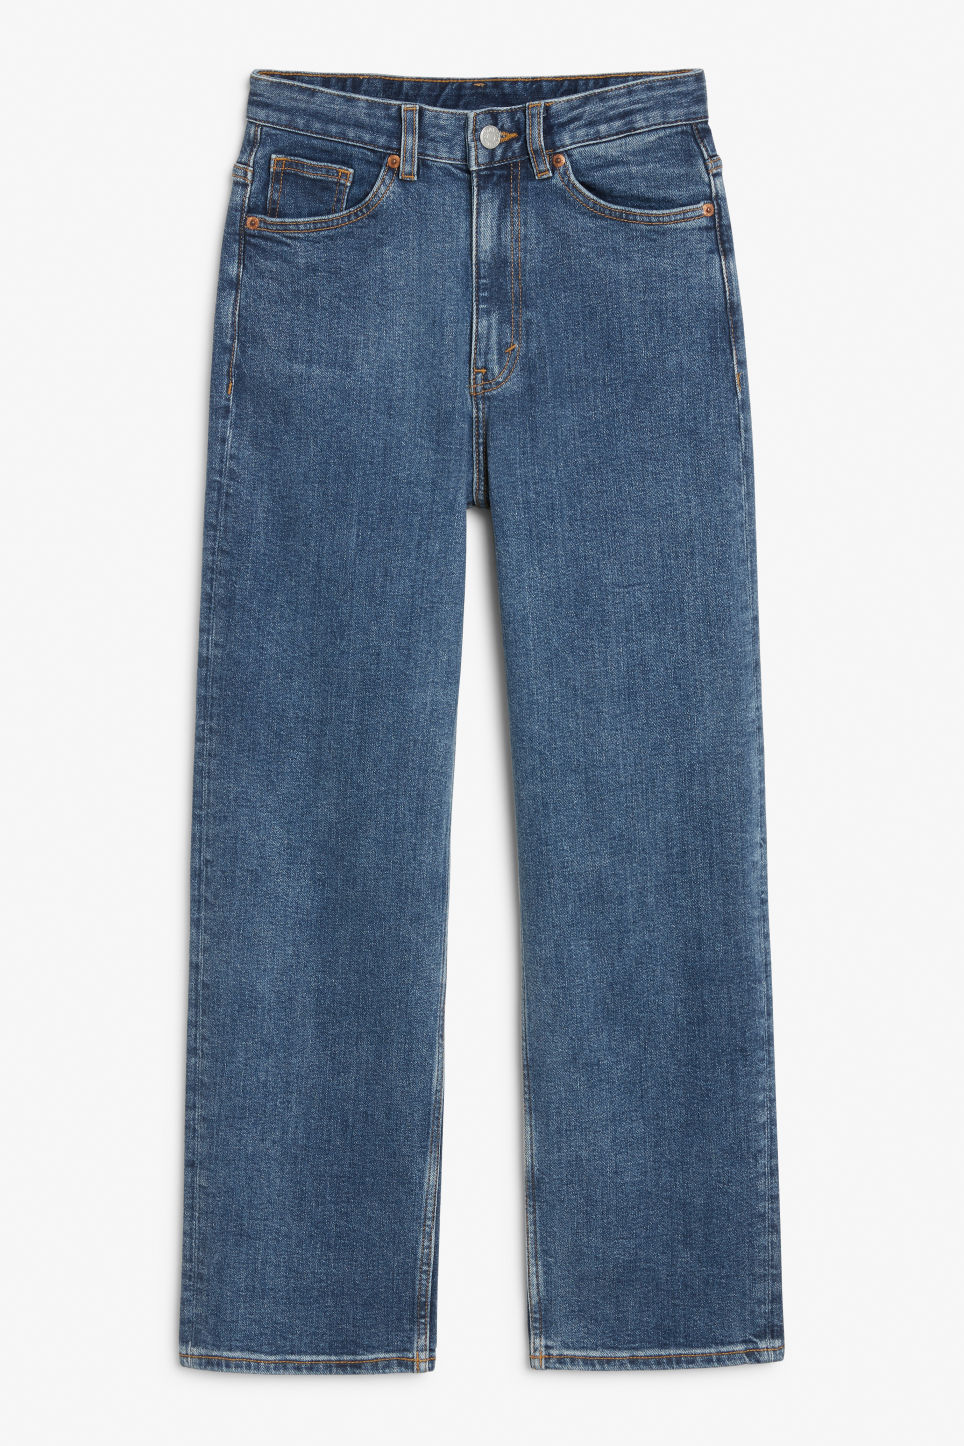 Jeans-klassiker